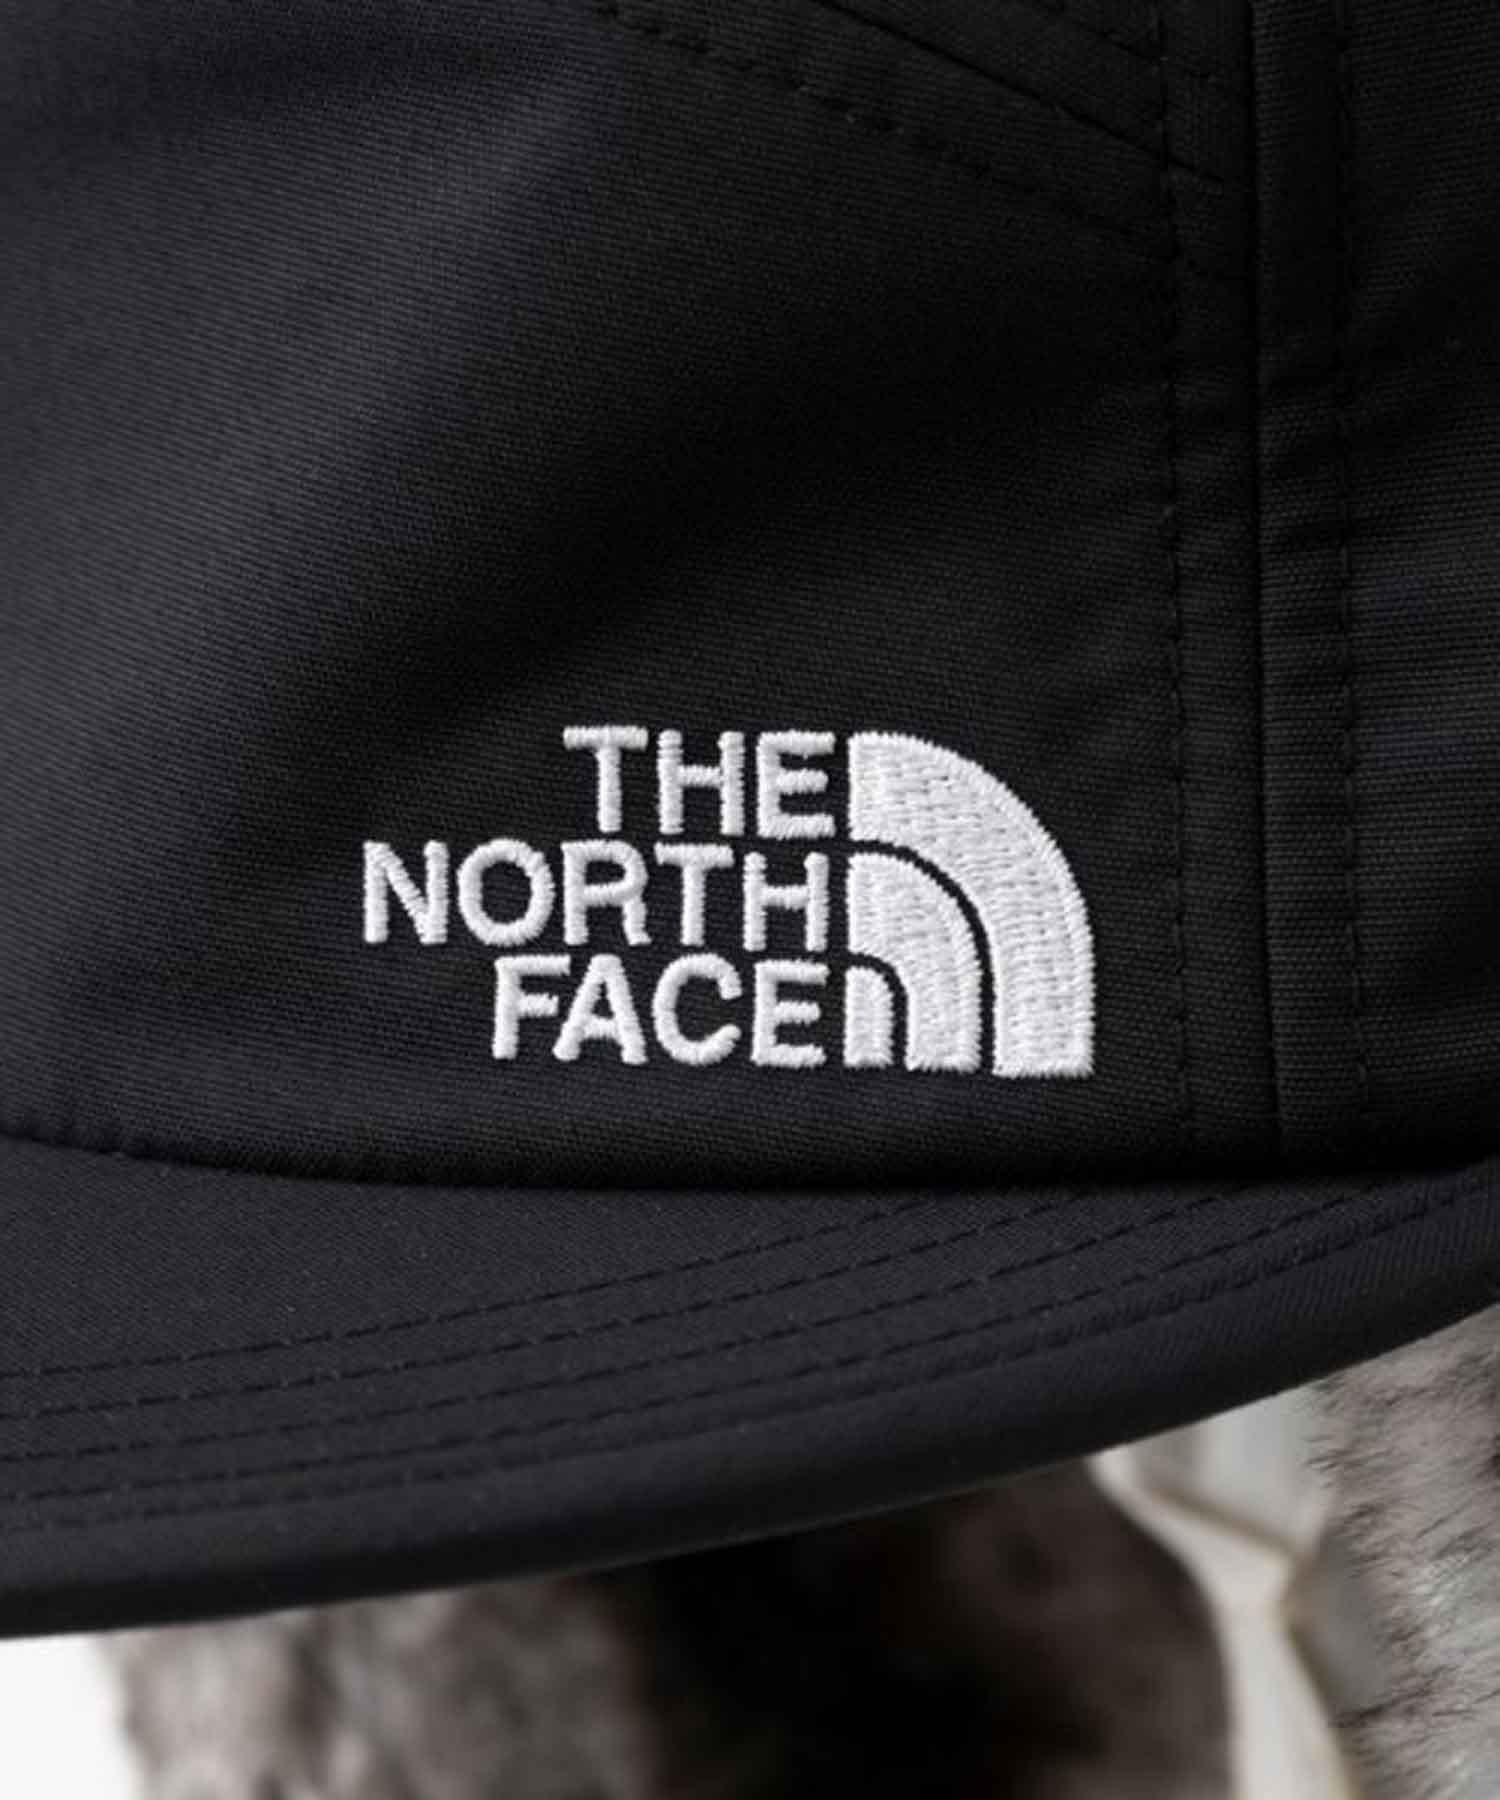 THE NORTH FACE/ザ・ノース・フェイス キャップ 防寒 保温 バッド 